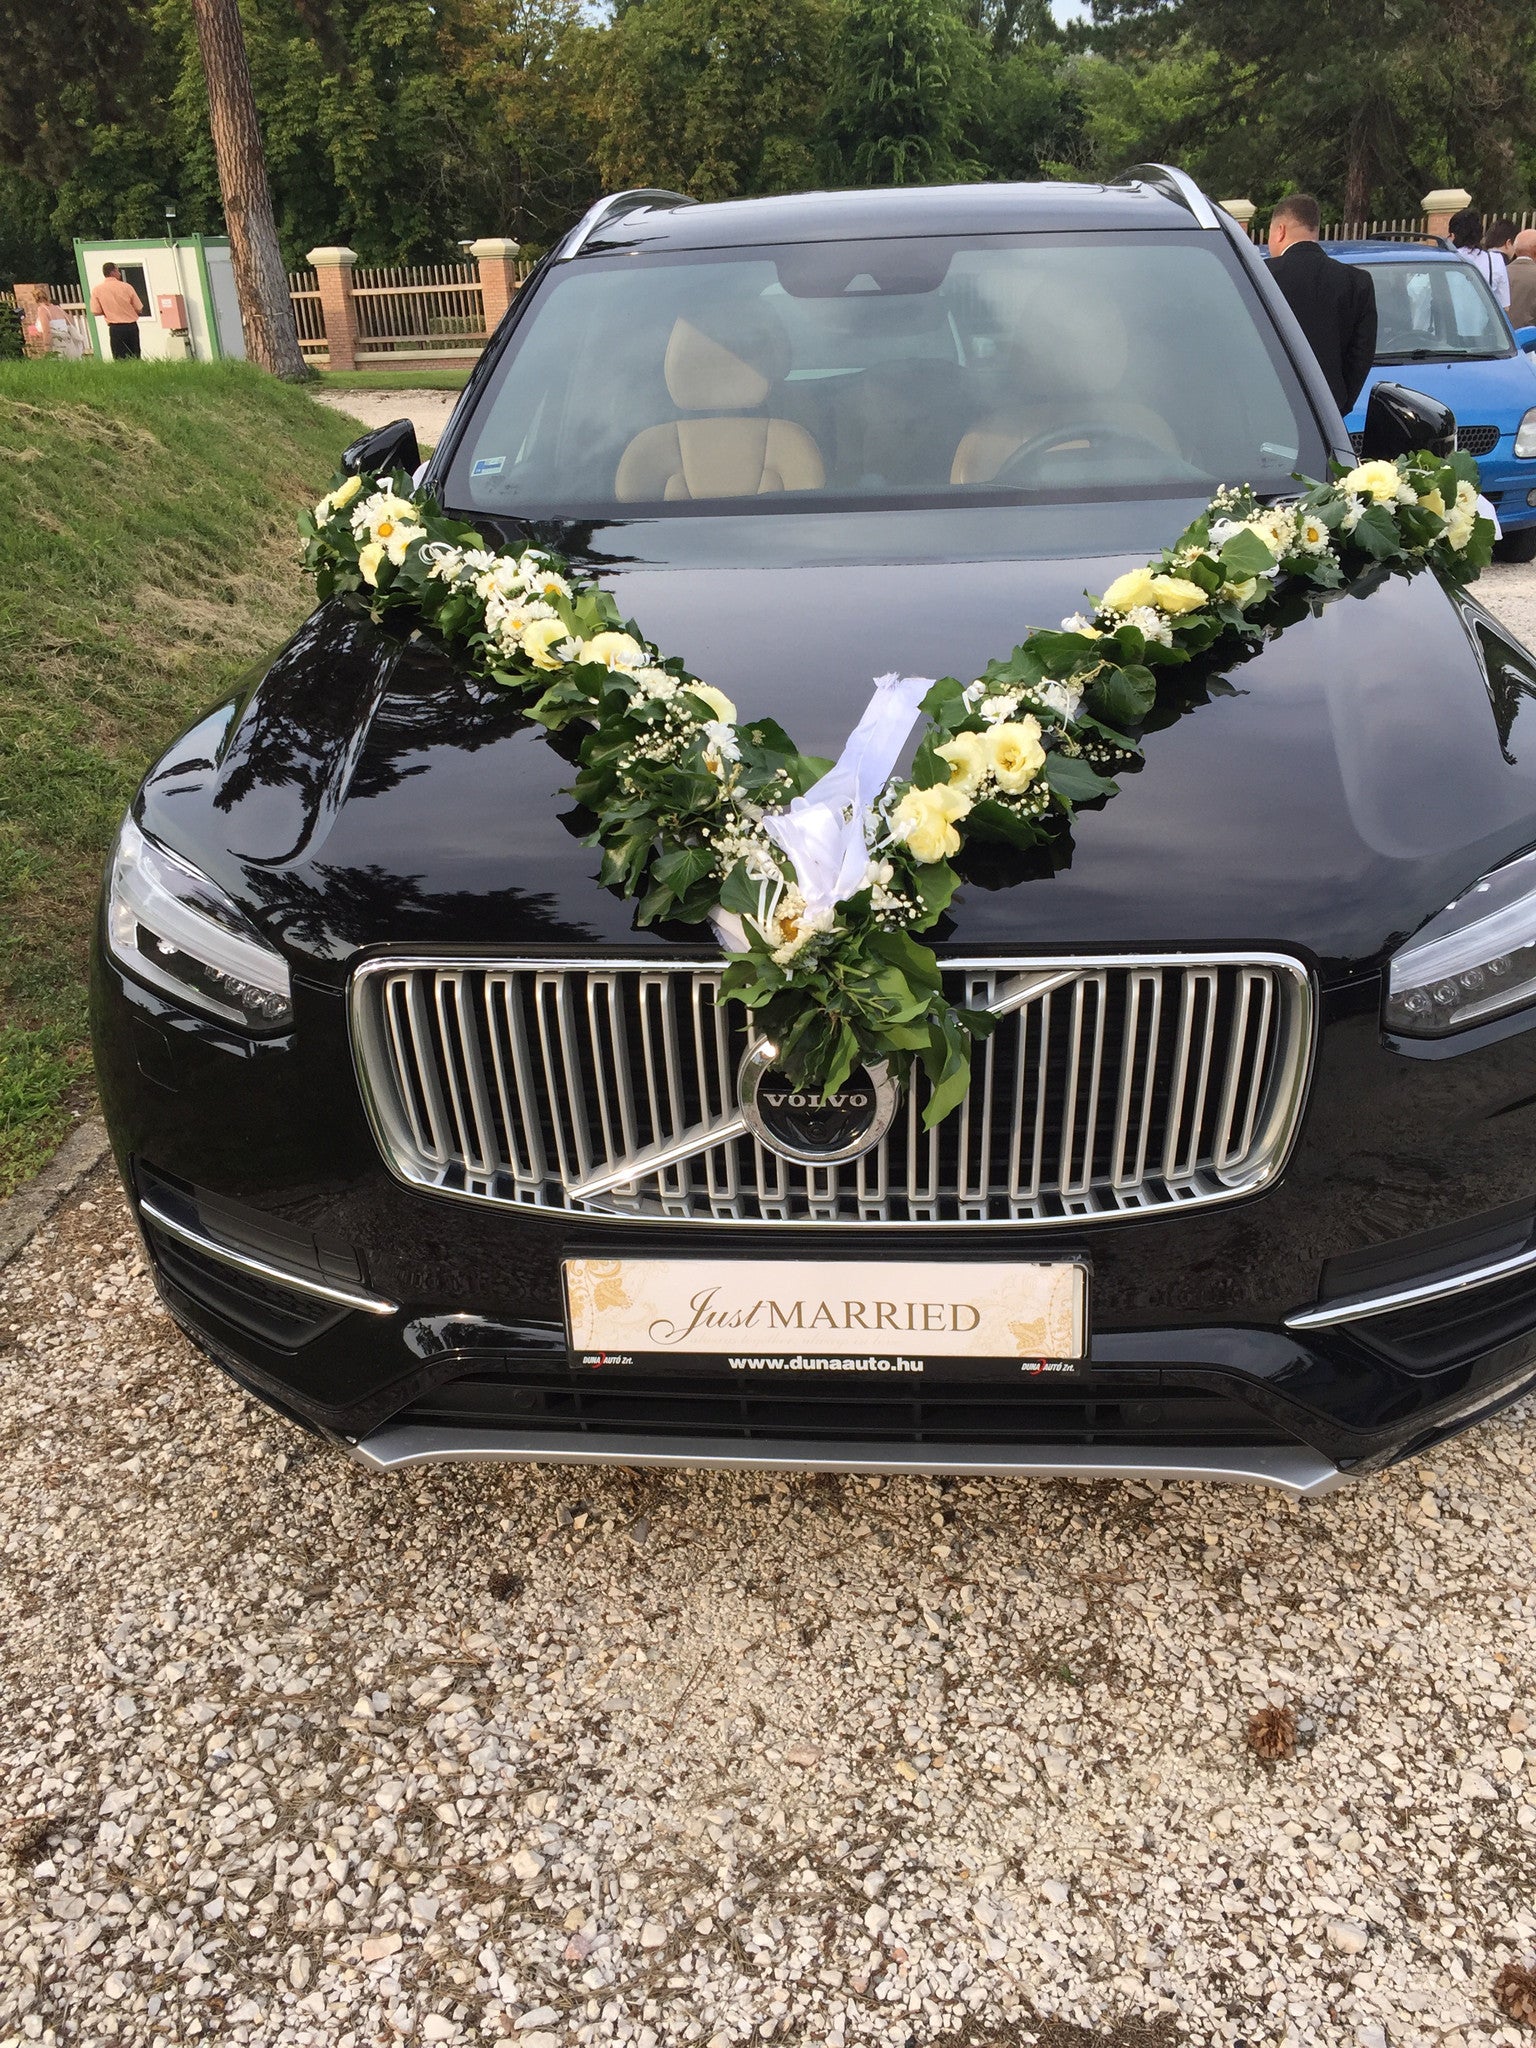 Wedding car garland